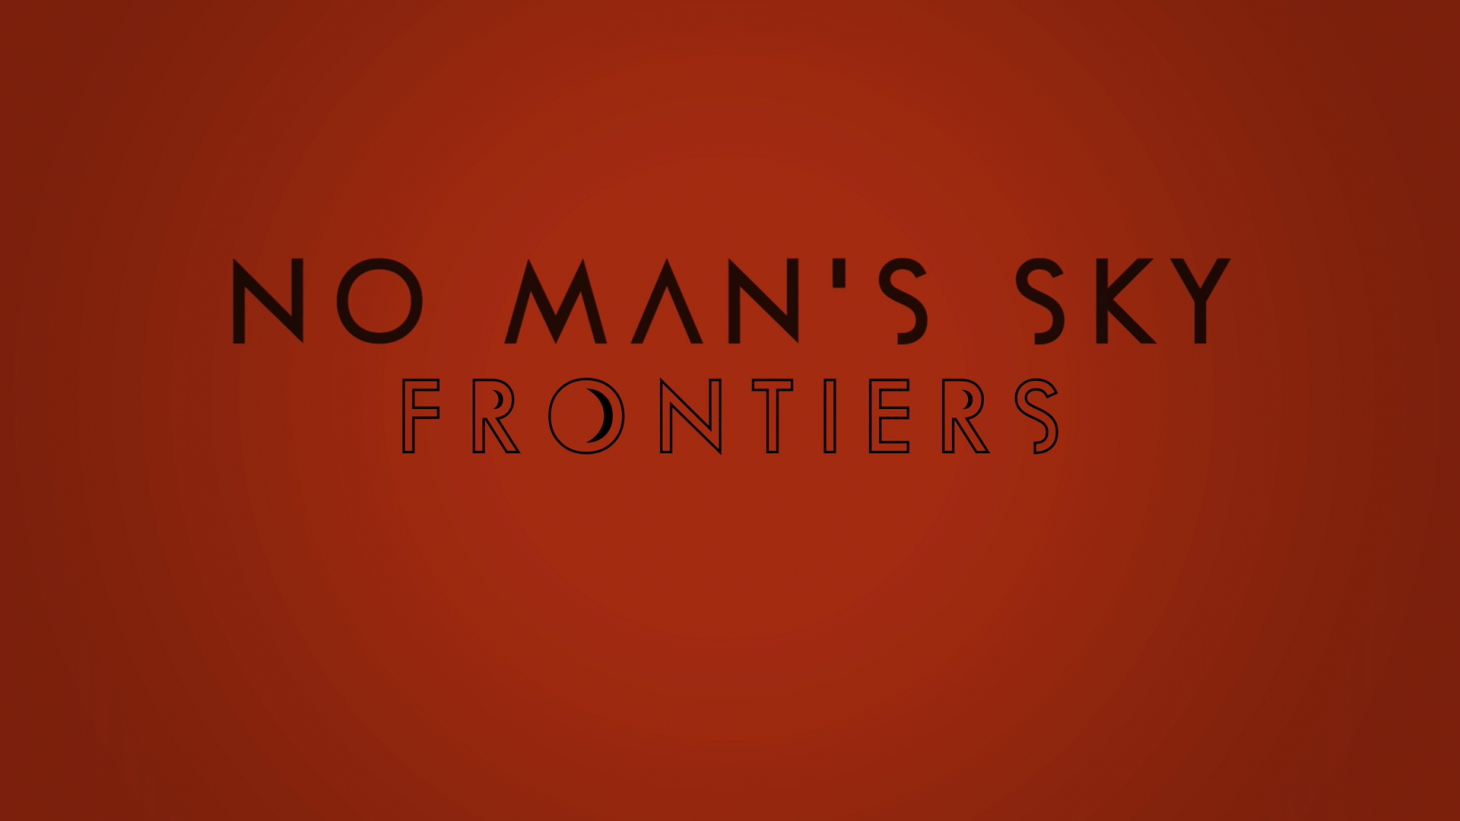 No Man's Sky Frontiers Update